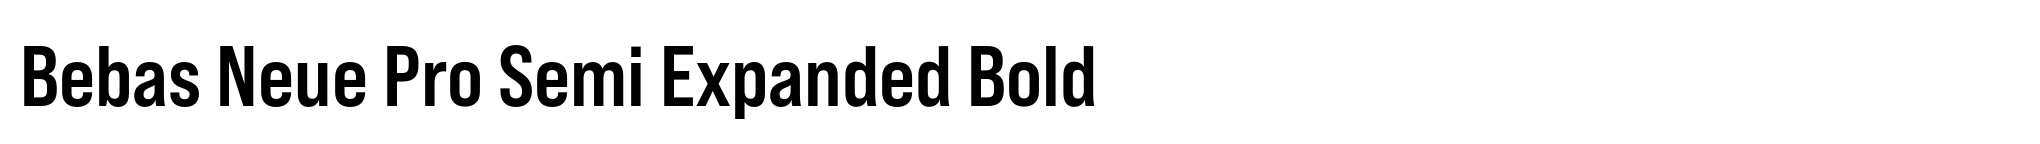 Bebas Neue Pro Semi Expanded Bold image